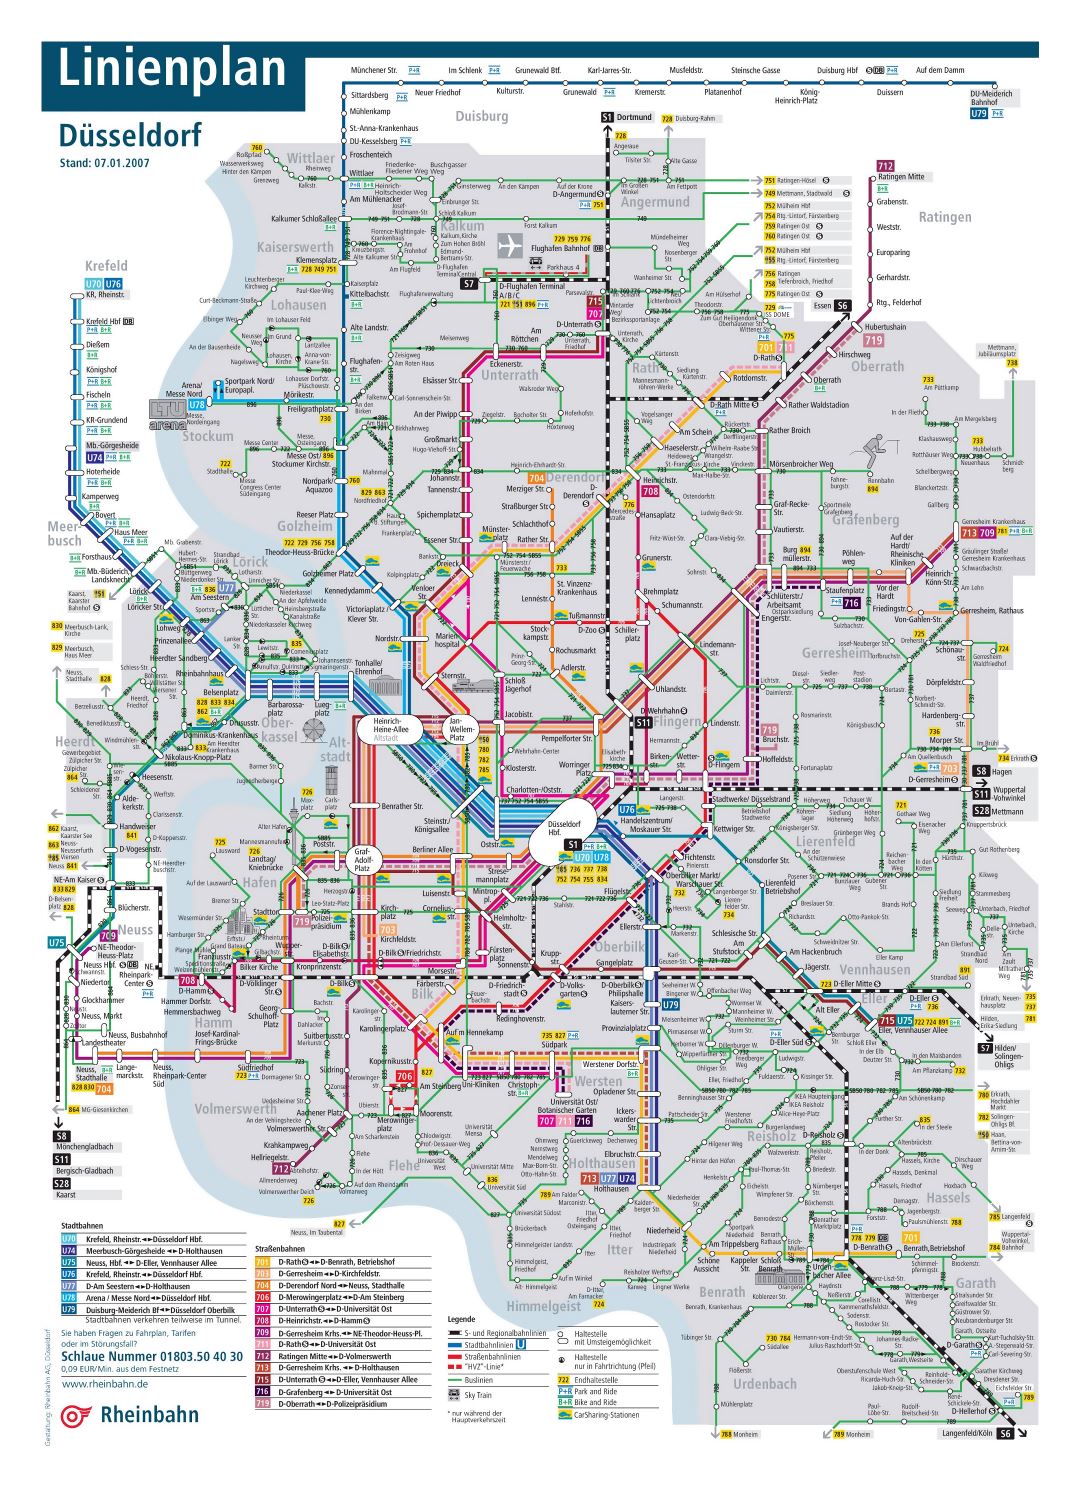 Большая детальная карта общественного транспорта города Дюссельдорф